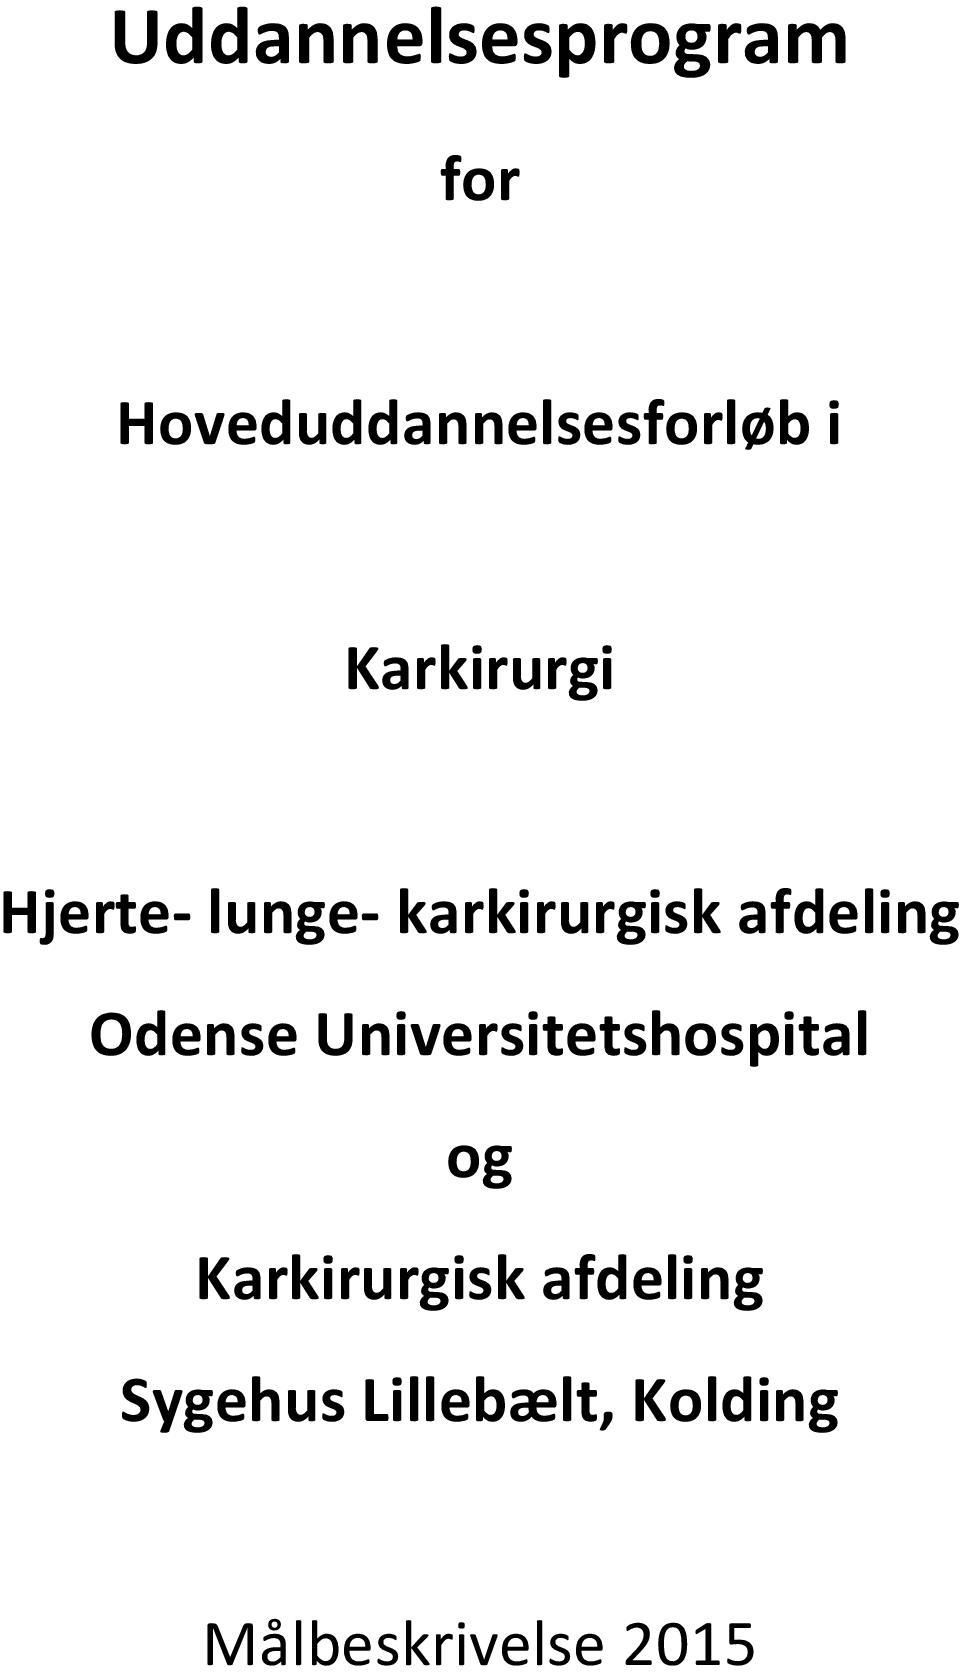 Odense Universitetshospital og Karkirurgisk